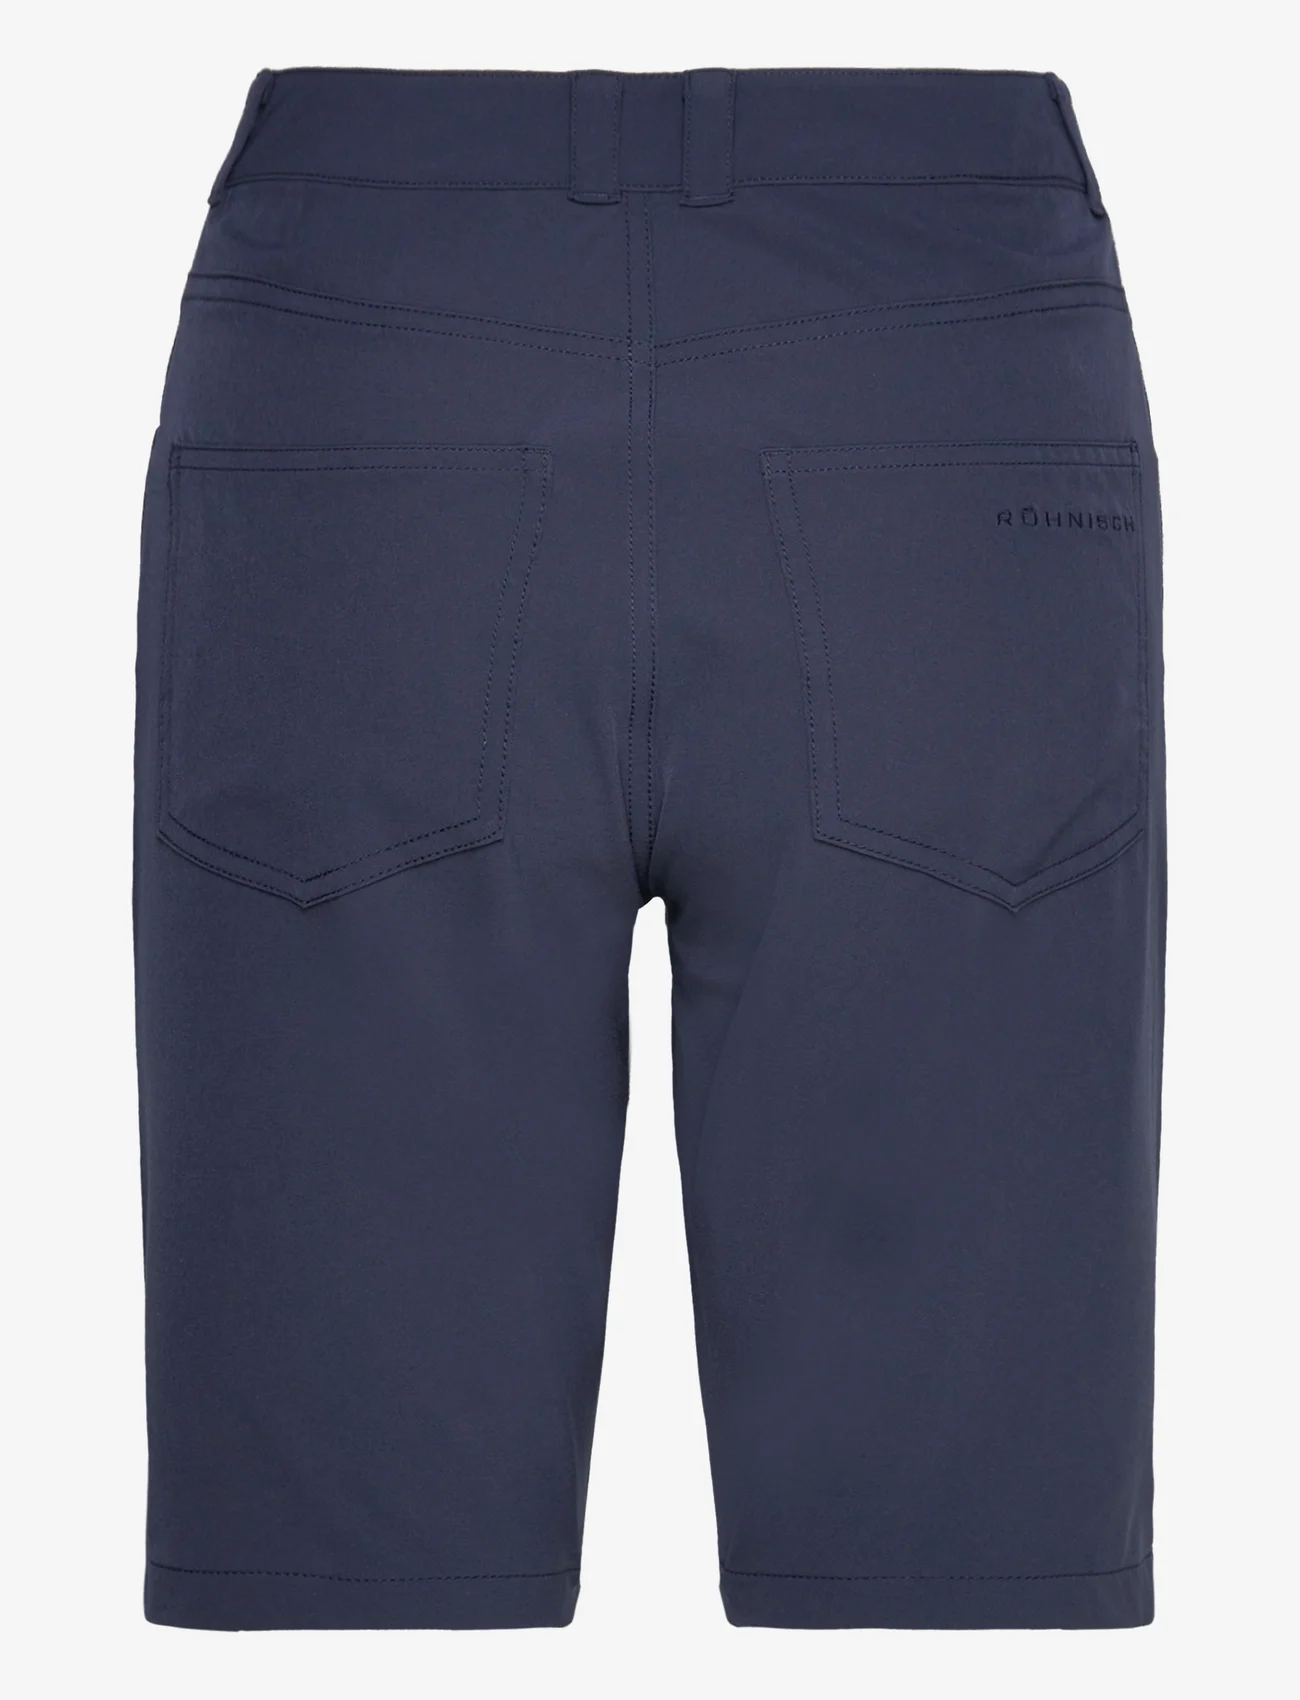 Röhnisch - Chie Comfort Bermuda - sports shorts - navy - 1